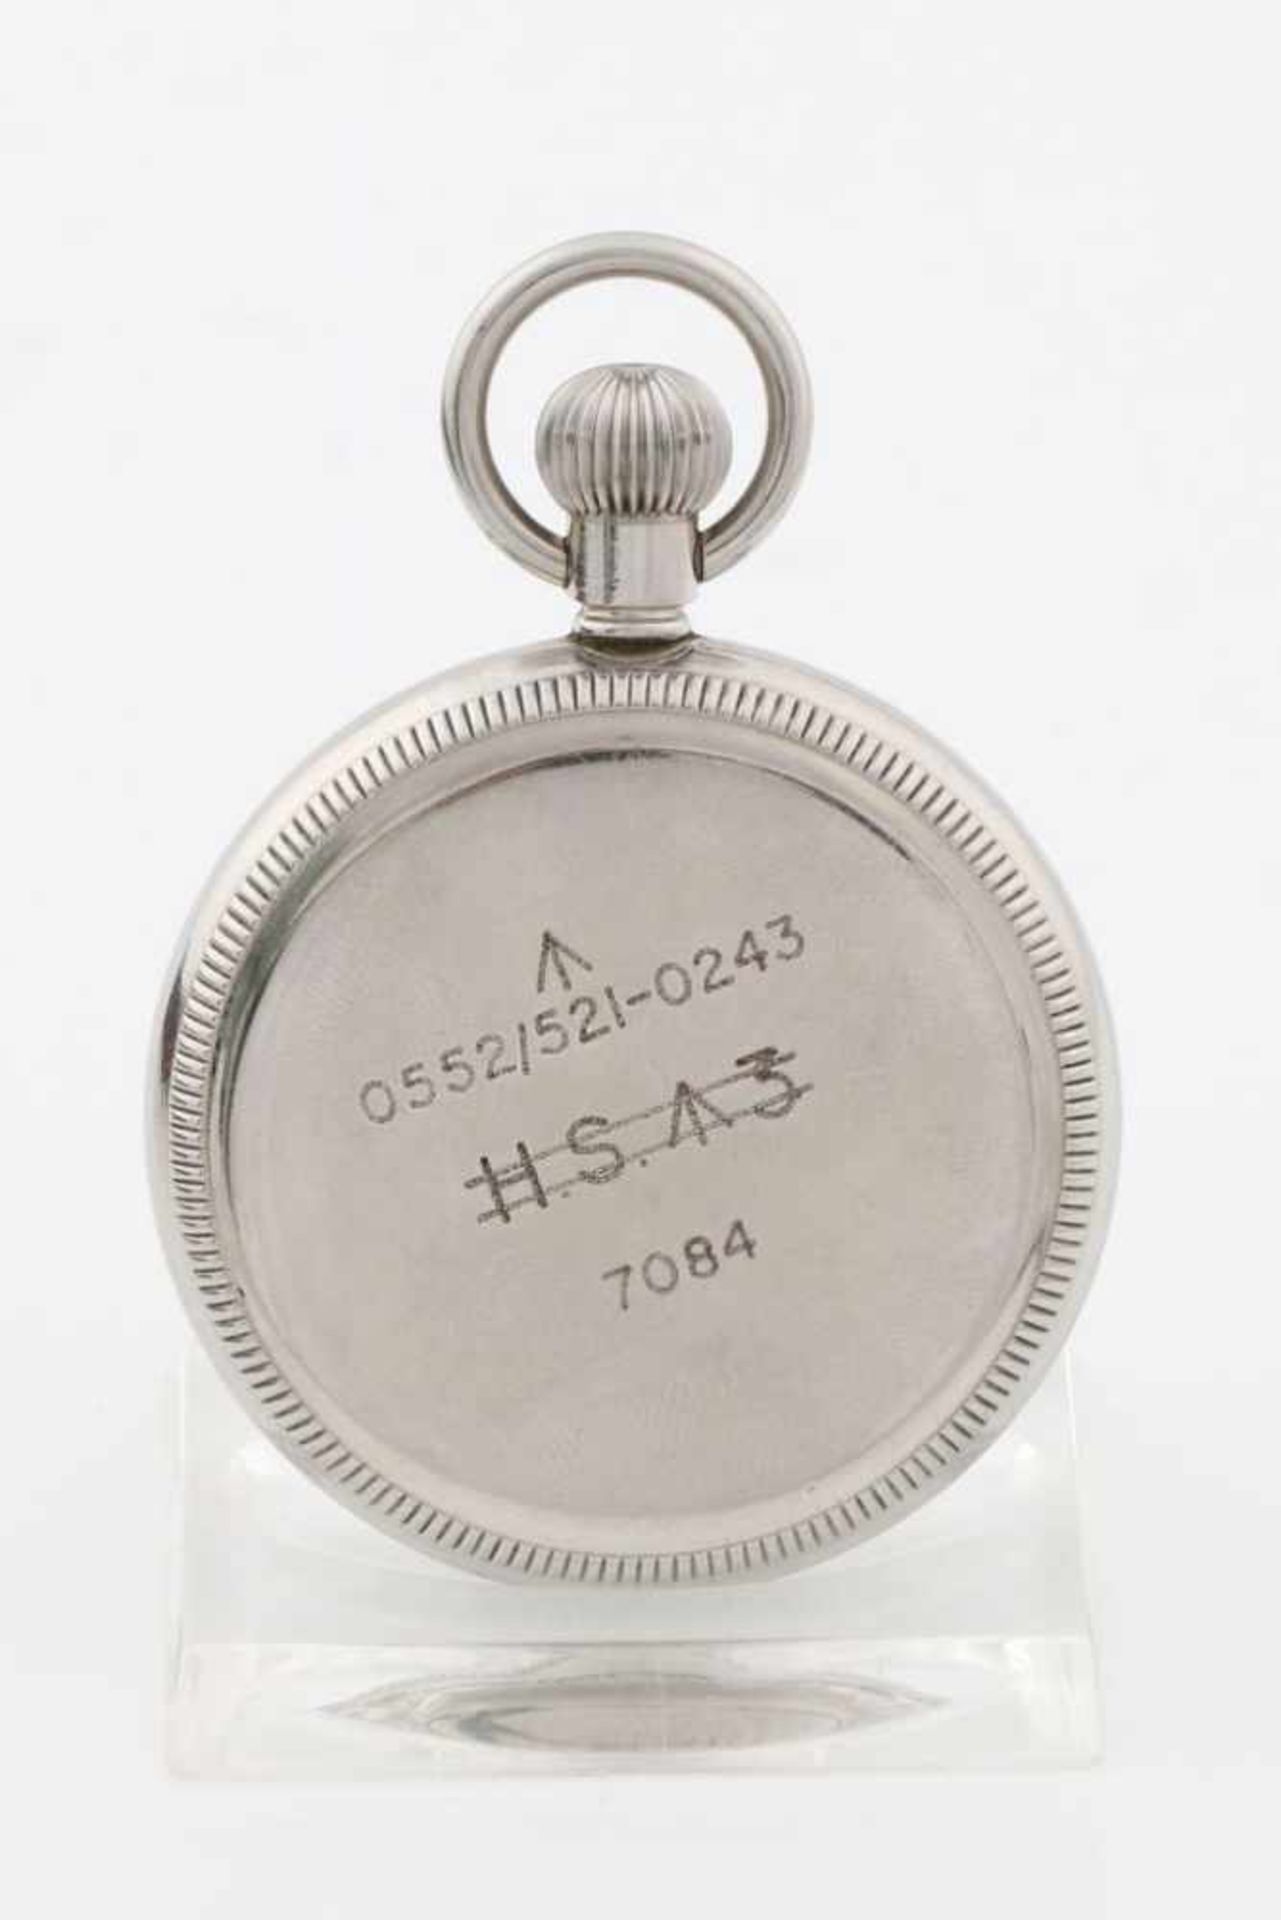 ZENITH Taschenuhr der Royal Navy, um 1930sogenannte ¨Deck-watch¨, vernickeltes Gehäuse, D ca. - Bild 2 aus 3